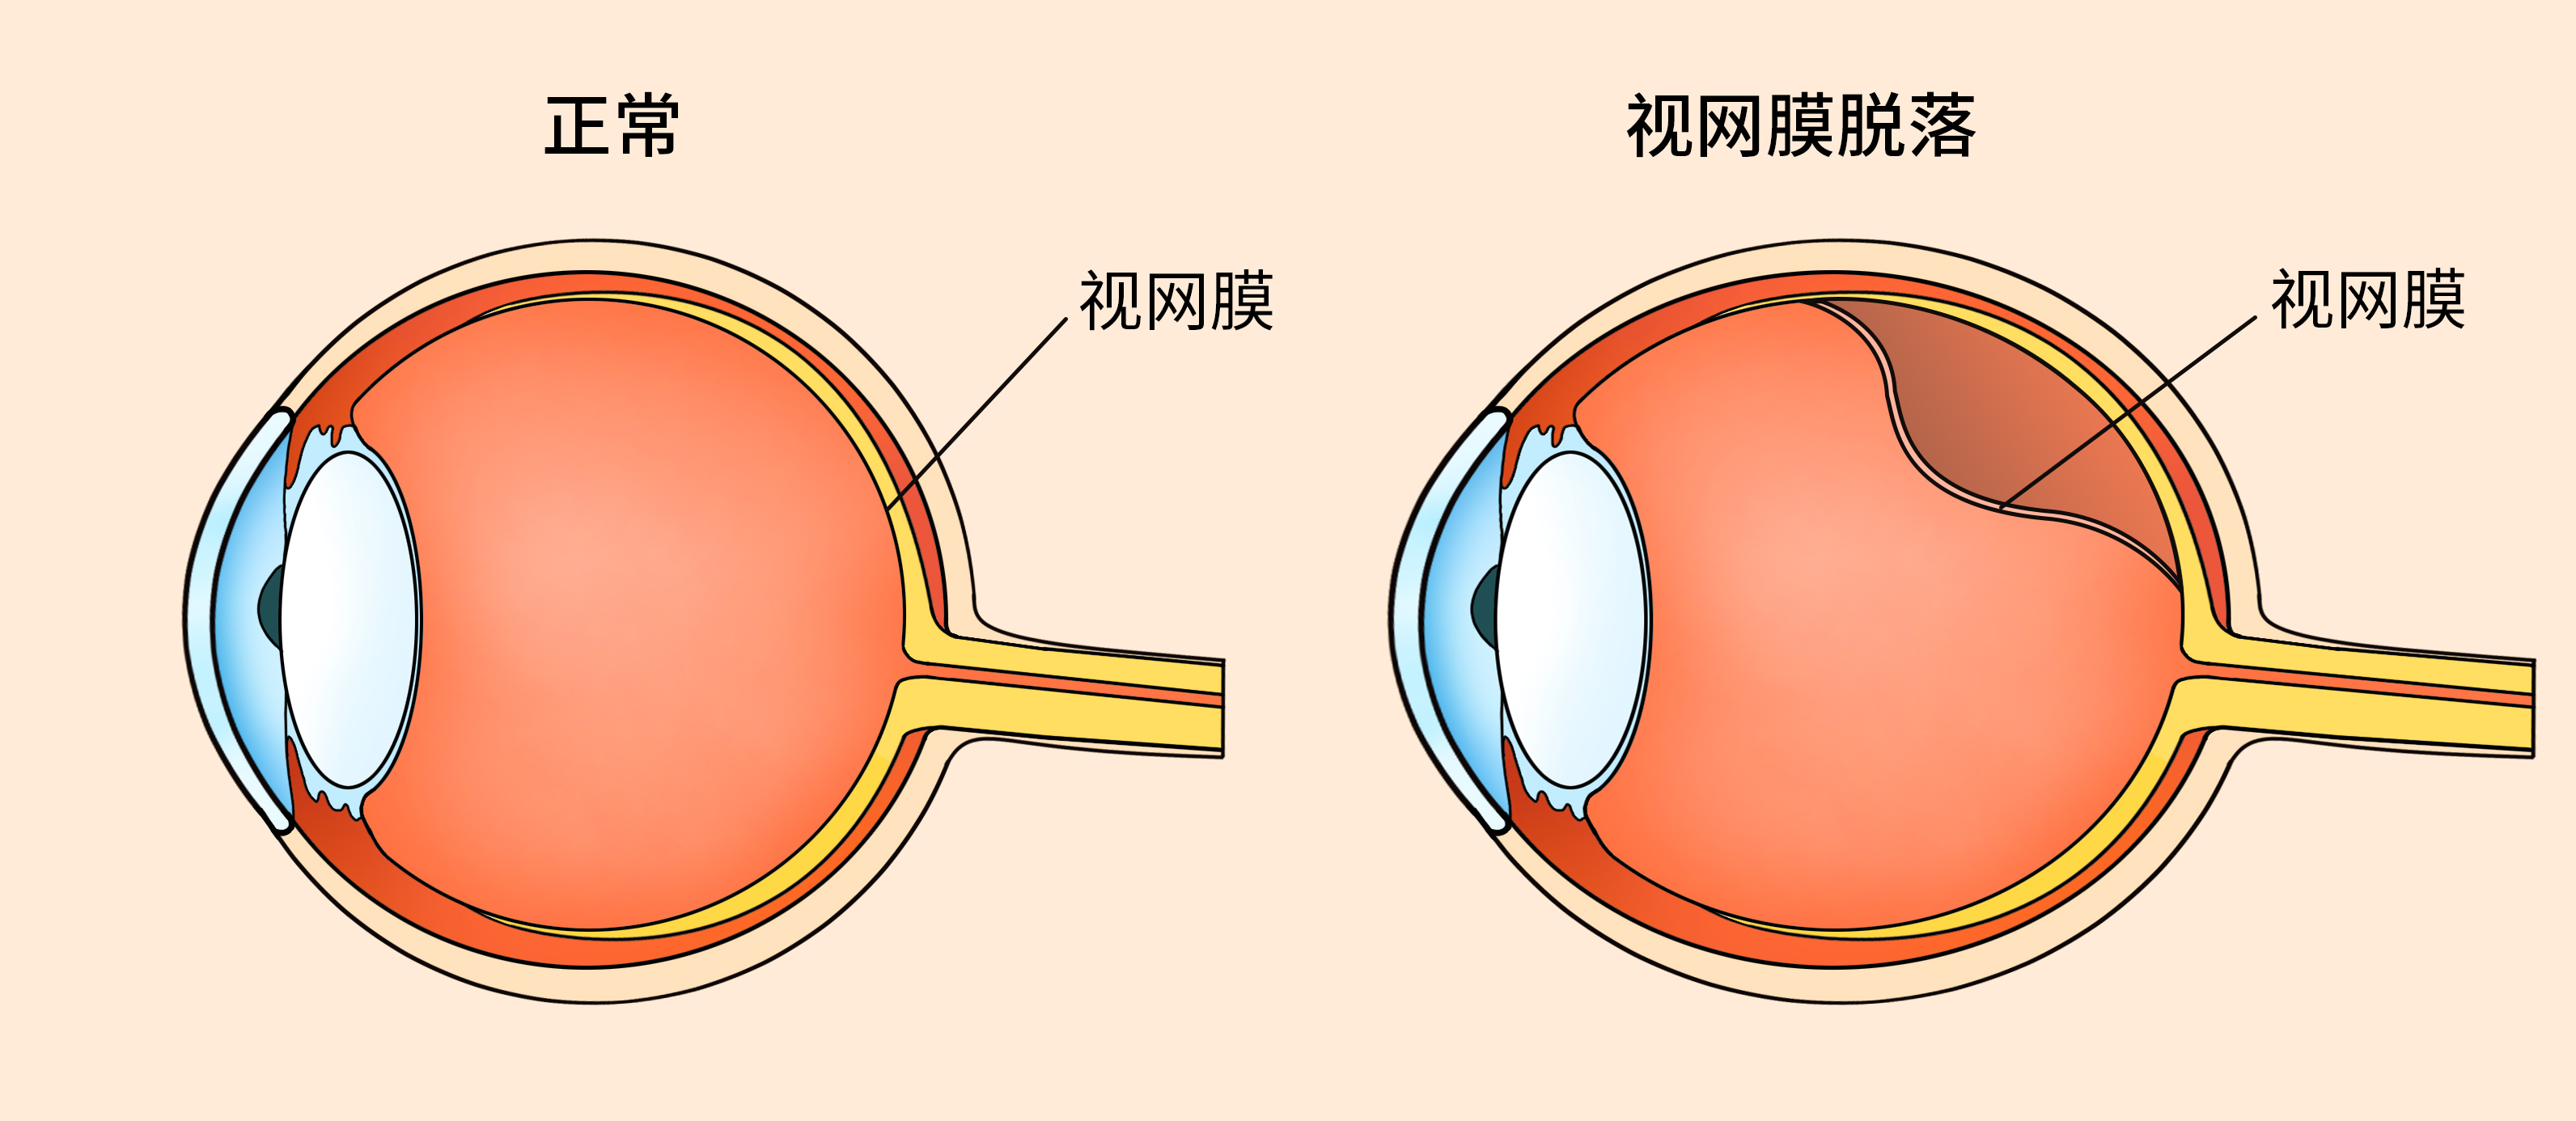 高度近视须警惕:长期用眼过度易致视网膜脱落